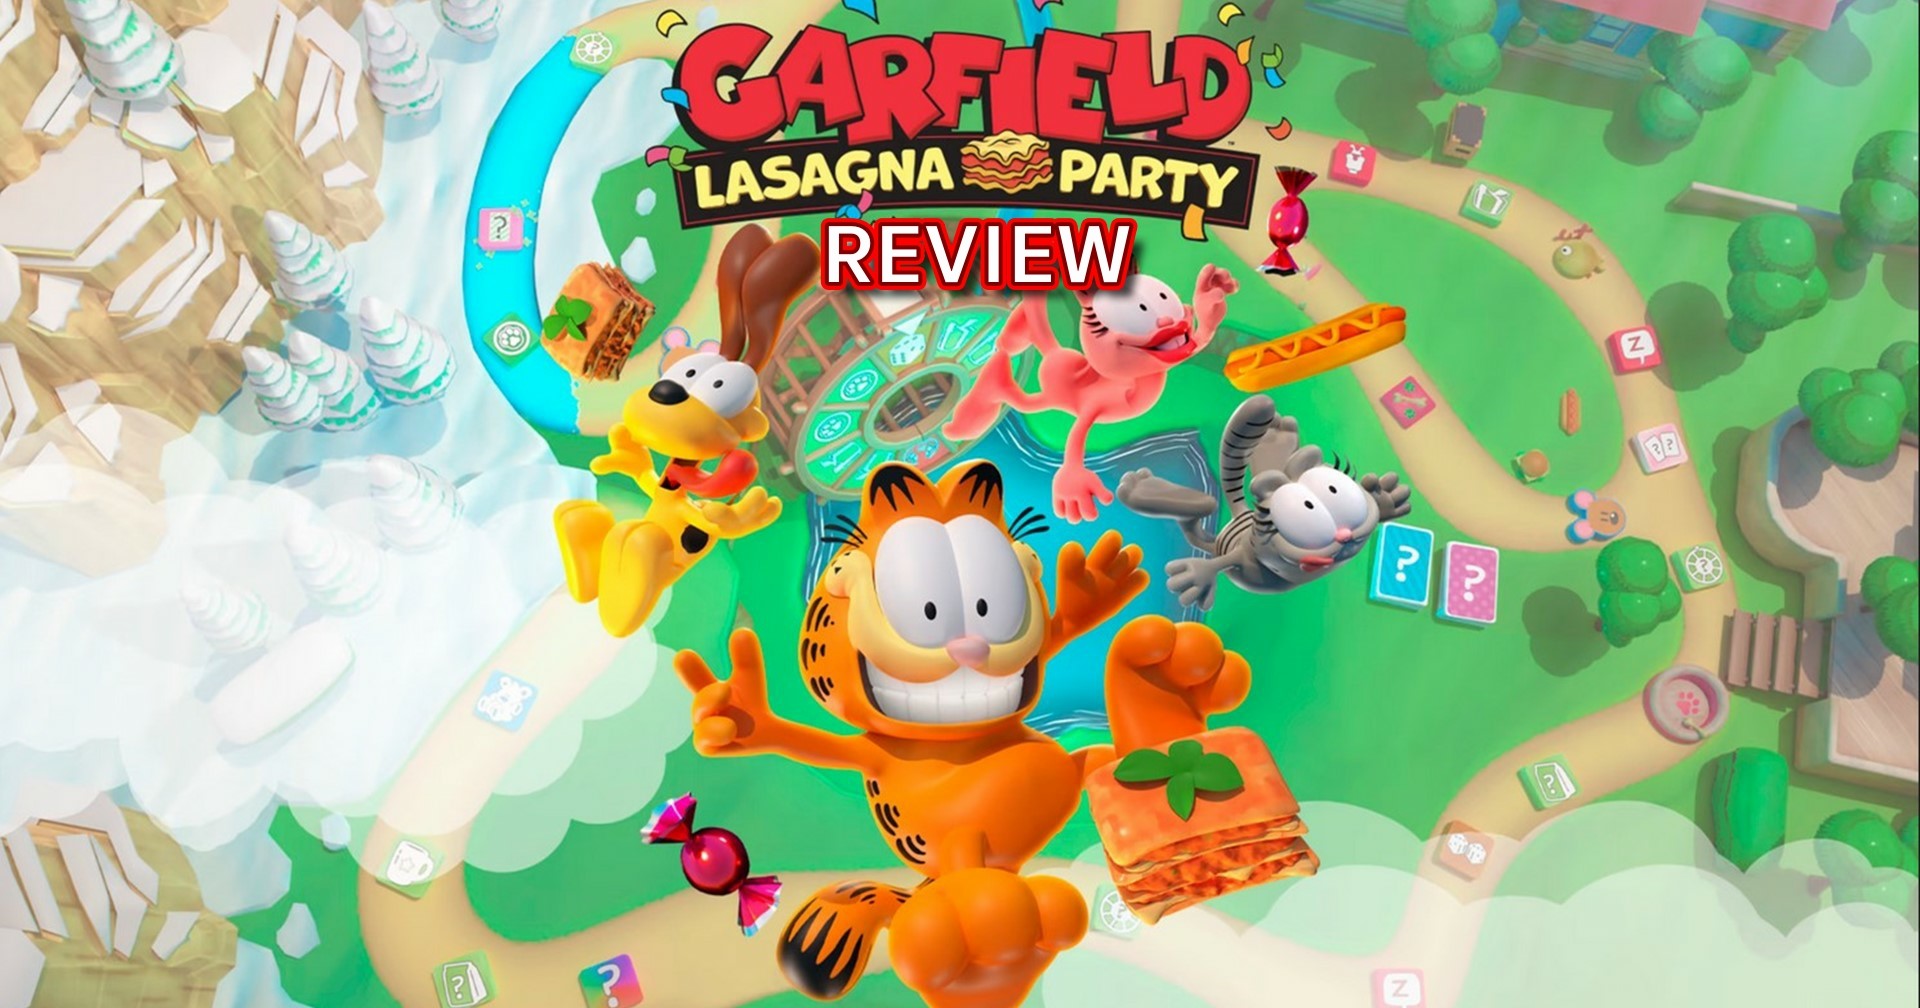 รีวิวเกม Garfield Lasagna Party เกมแนว Mario Party ฉบับน้องแมวการ์ฟิลด์